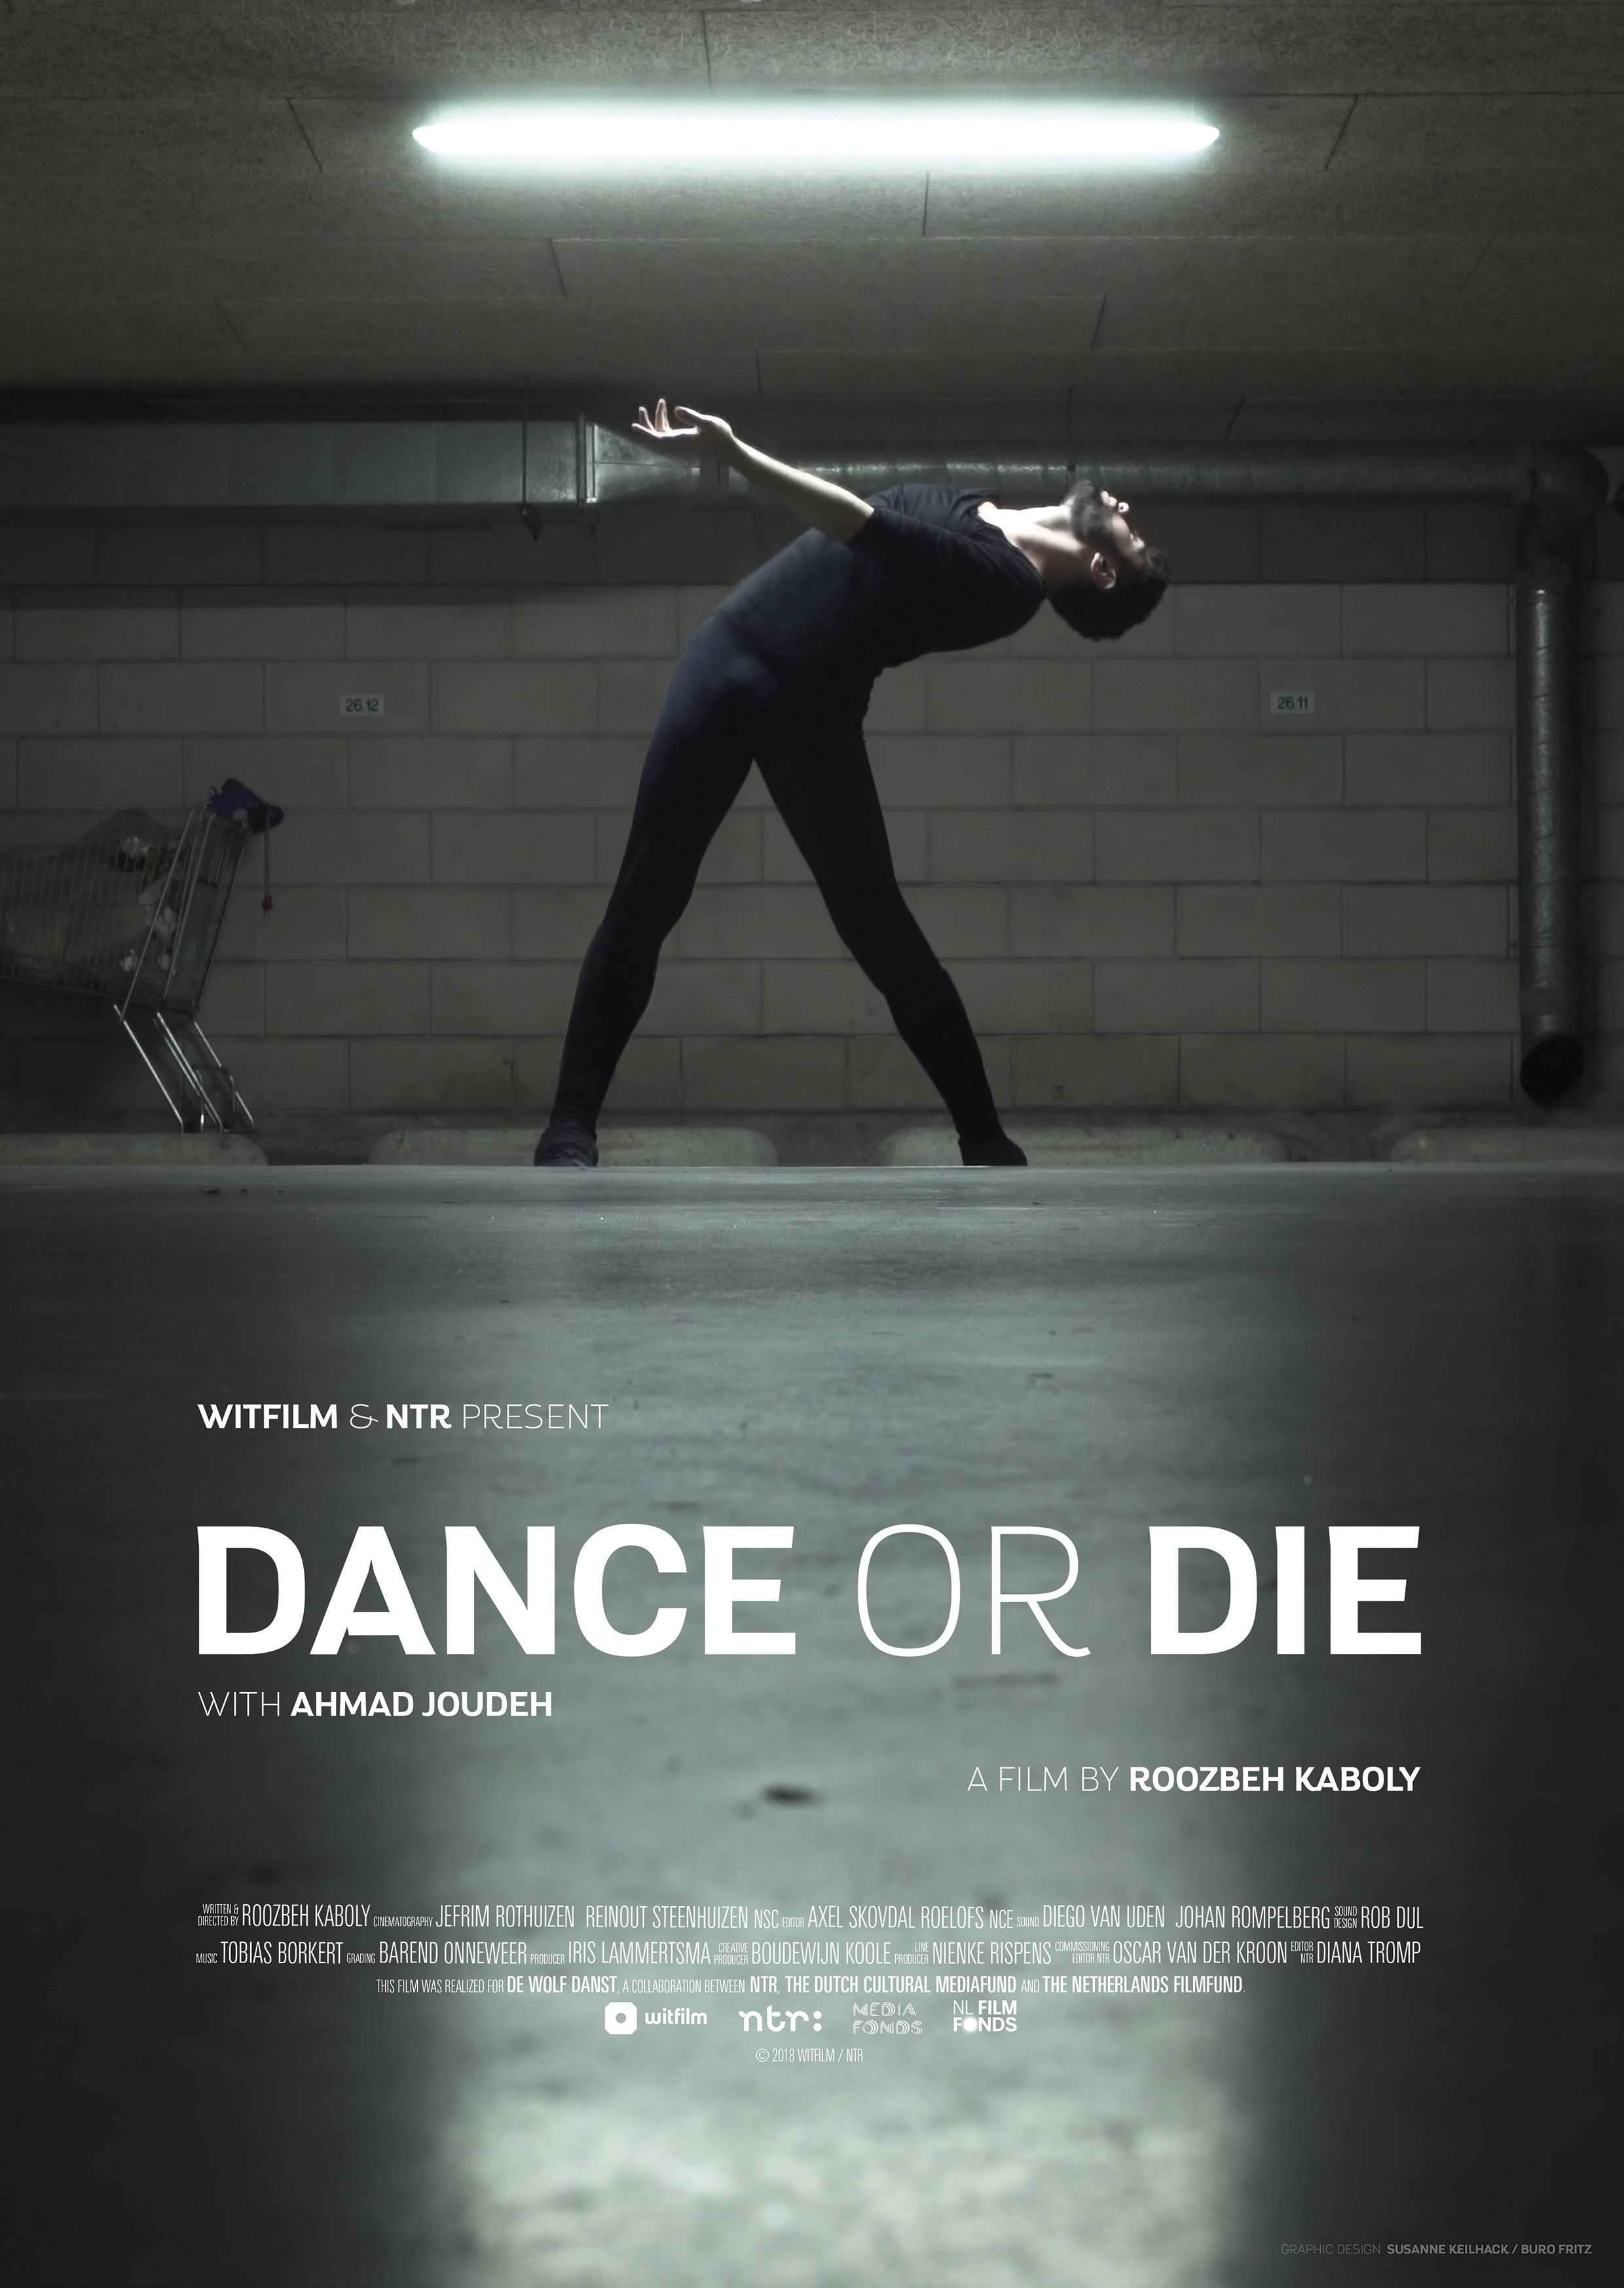 A4_Dance_or_Die_v4_EN_RGB